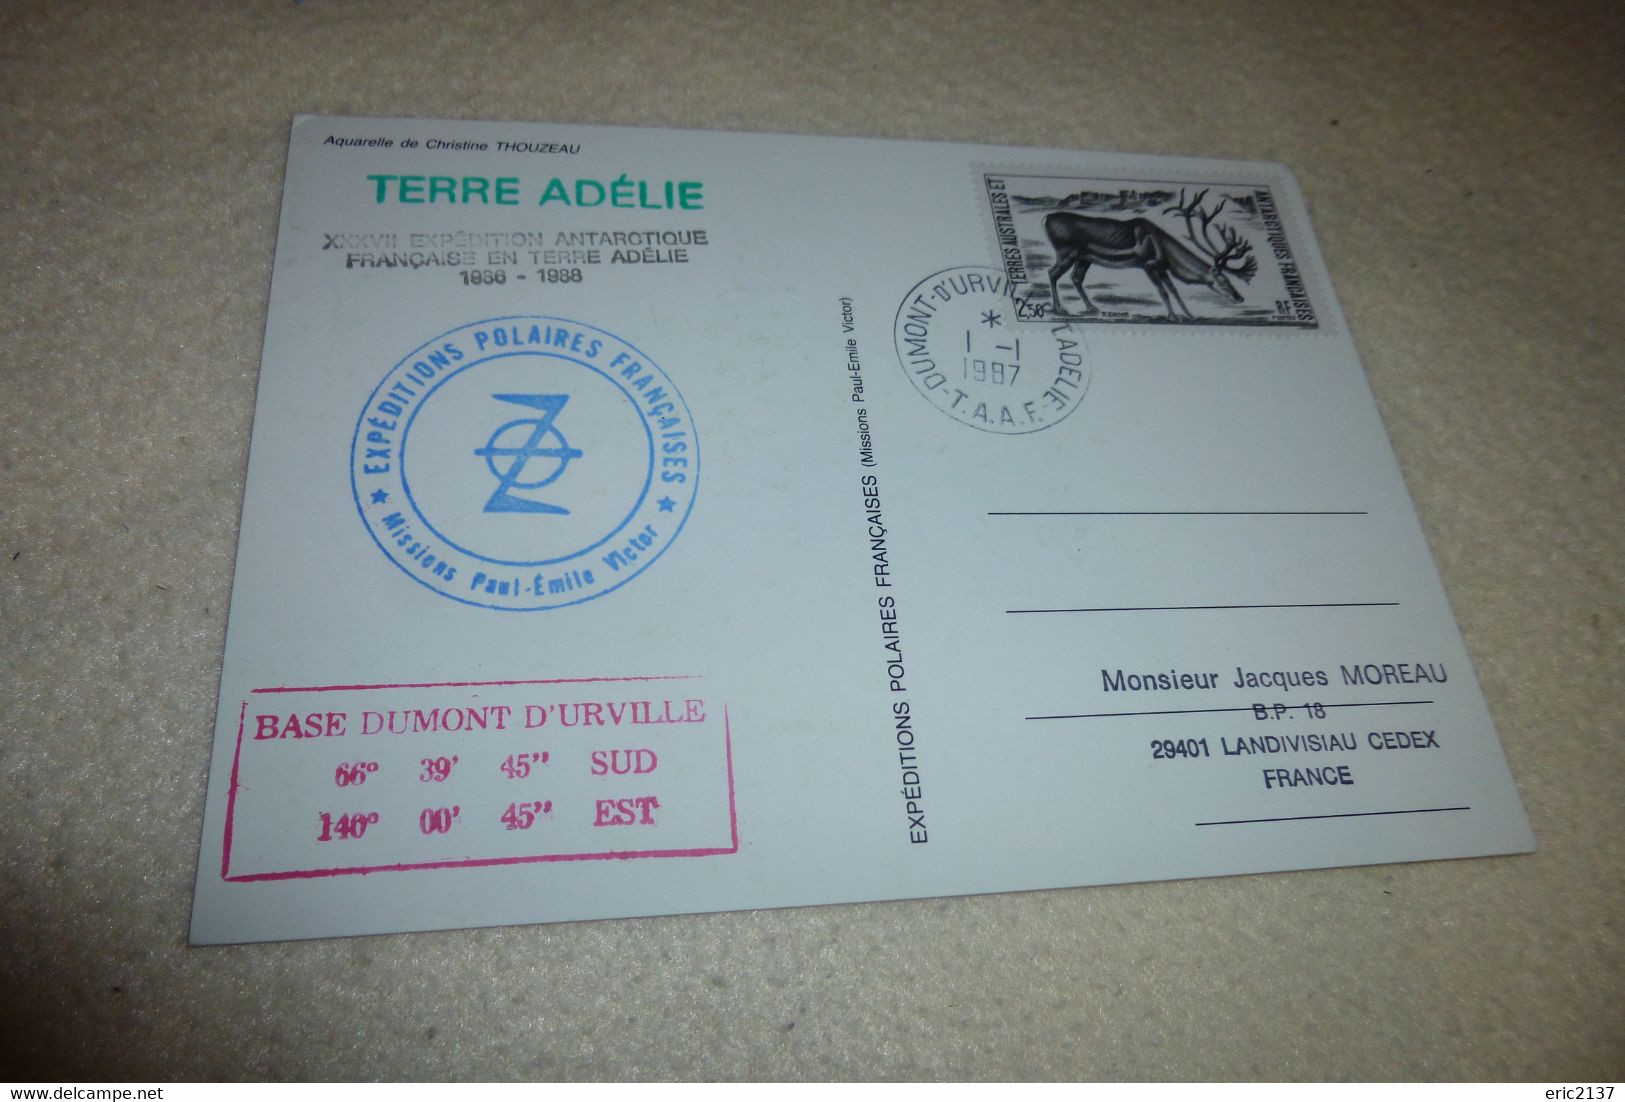 BELLE ILLUSTRATION DE C. THOUZEAU..CACHET TERRE ADELIE ..XXXVII EXPEDITION ANTARCTIQUE FRANCAISE 1986-1988 - TAAF : Territorios Australes Franceses